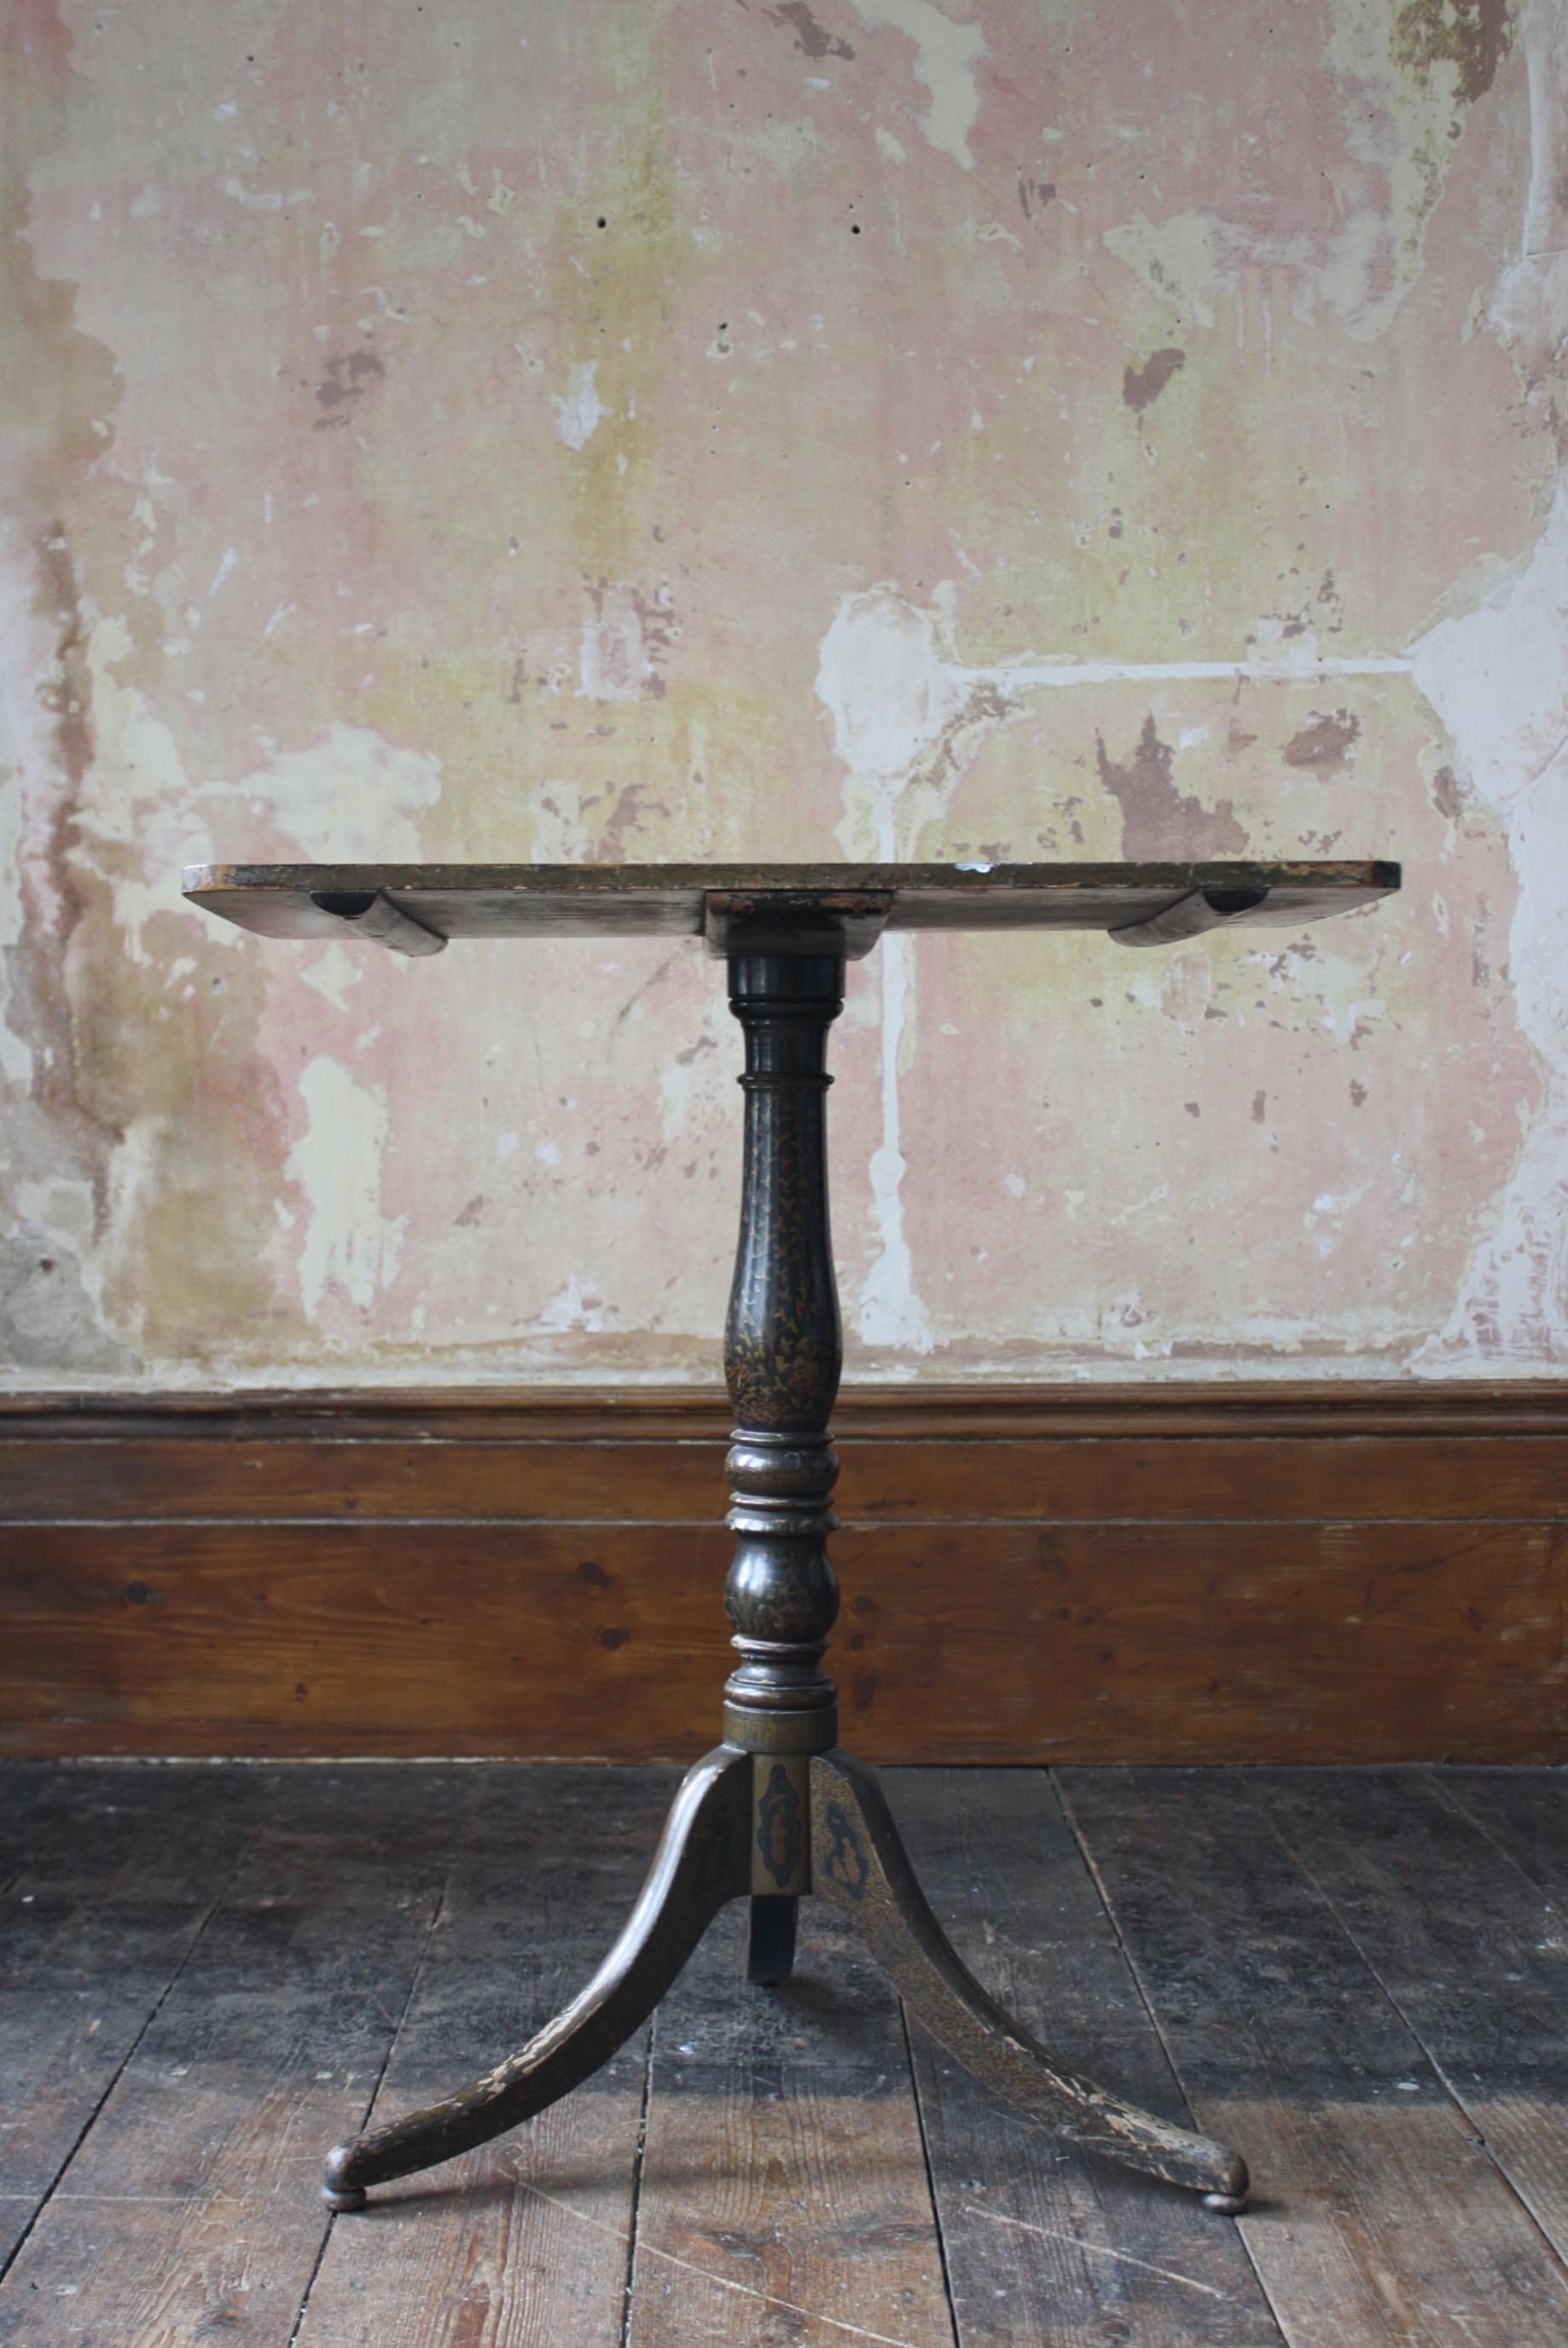 Ein besonders schön abgenutzter frühviktorianischer, schwarz lackierter Beistell-/Weintisch. Um 1840 

Ungewöhnlich zurückhaltende Verzierung auf der Oberseite, stark abgenutzt vom Gebrauch, was dem Stück einen wunderbaren Gesamteindruck verleiht.